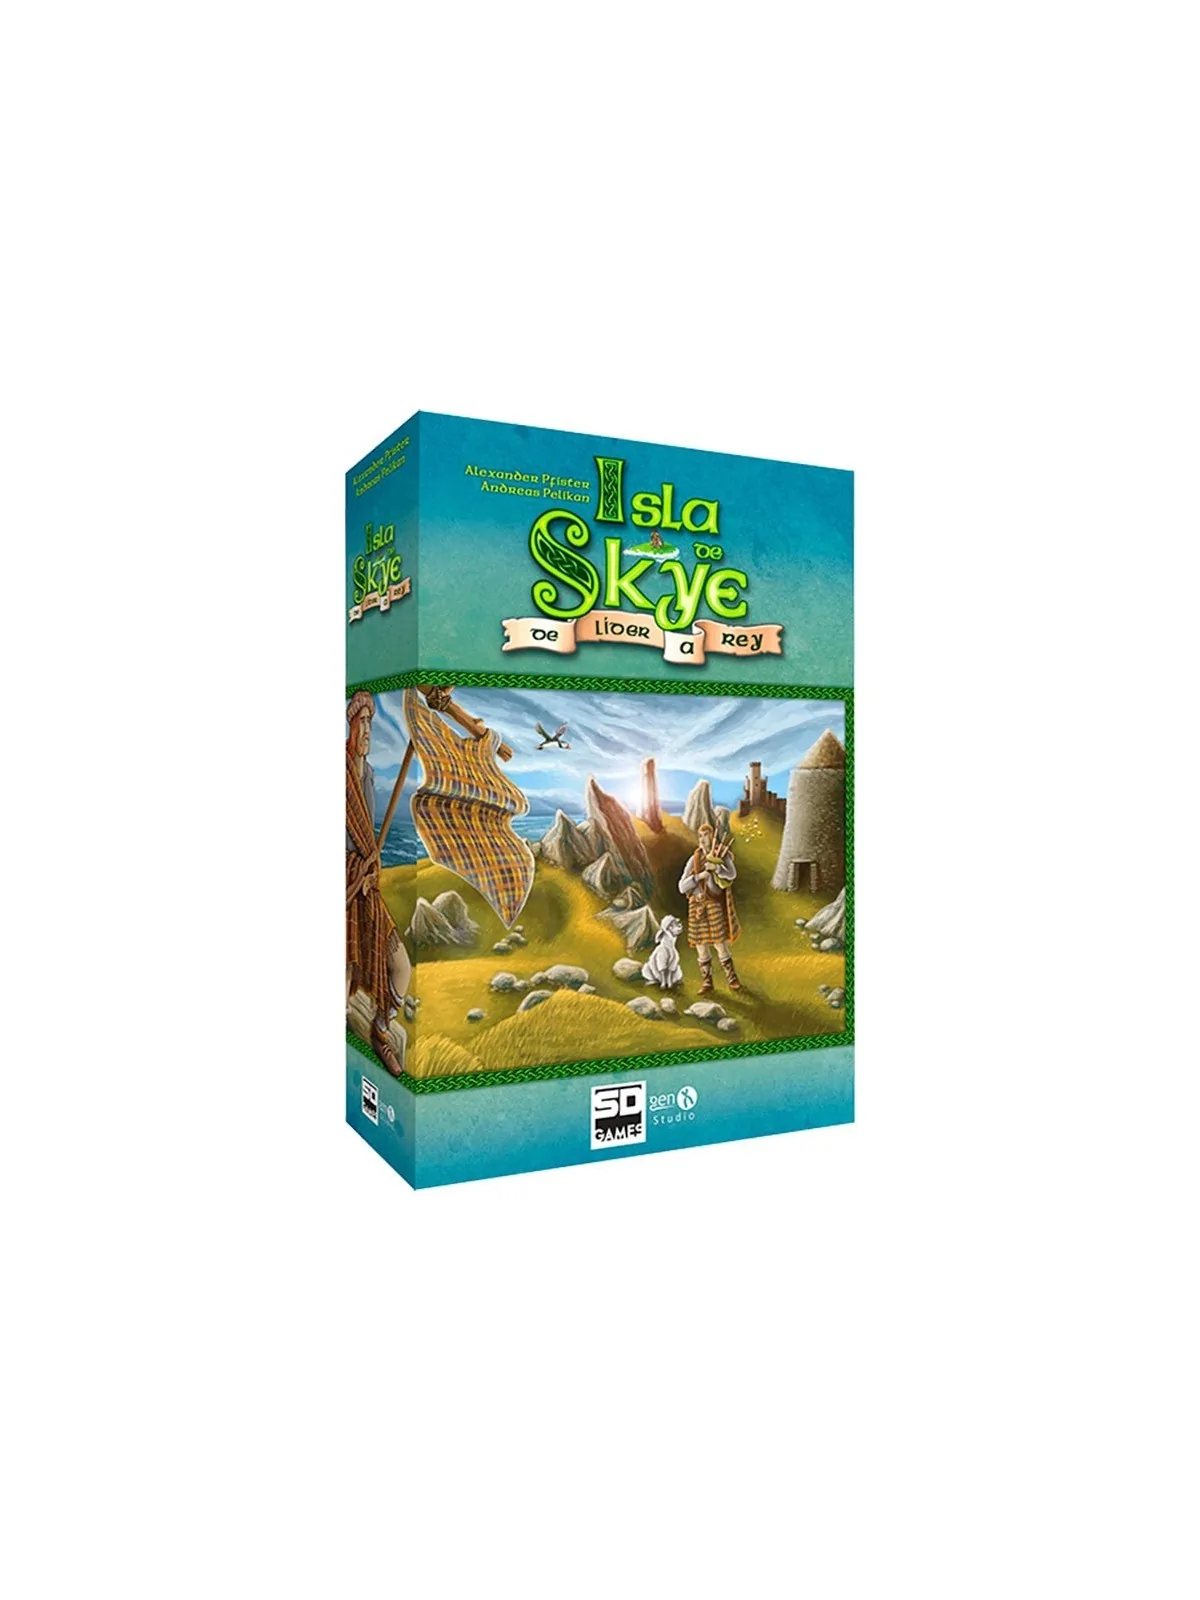 Comprar Pack Isla de Skye barato al mejor precio 15,90 € de SD GAMES